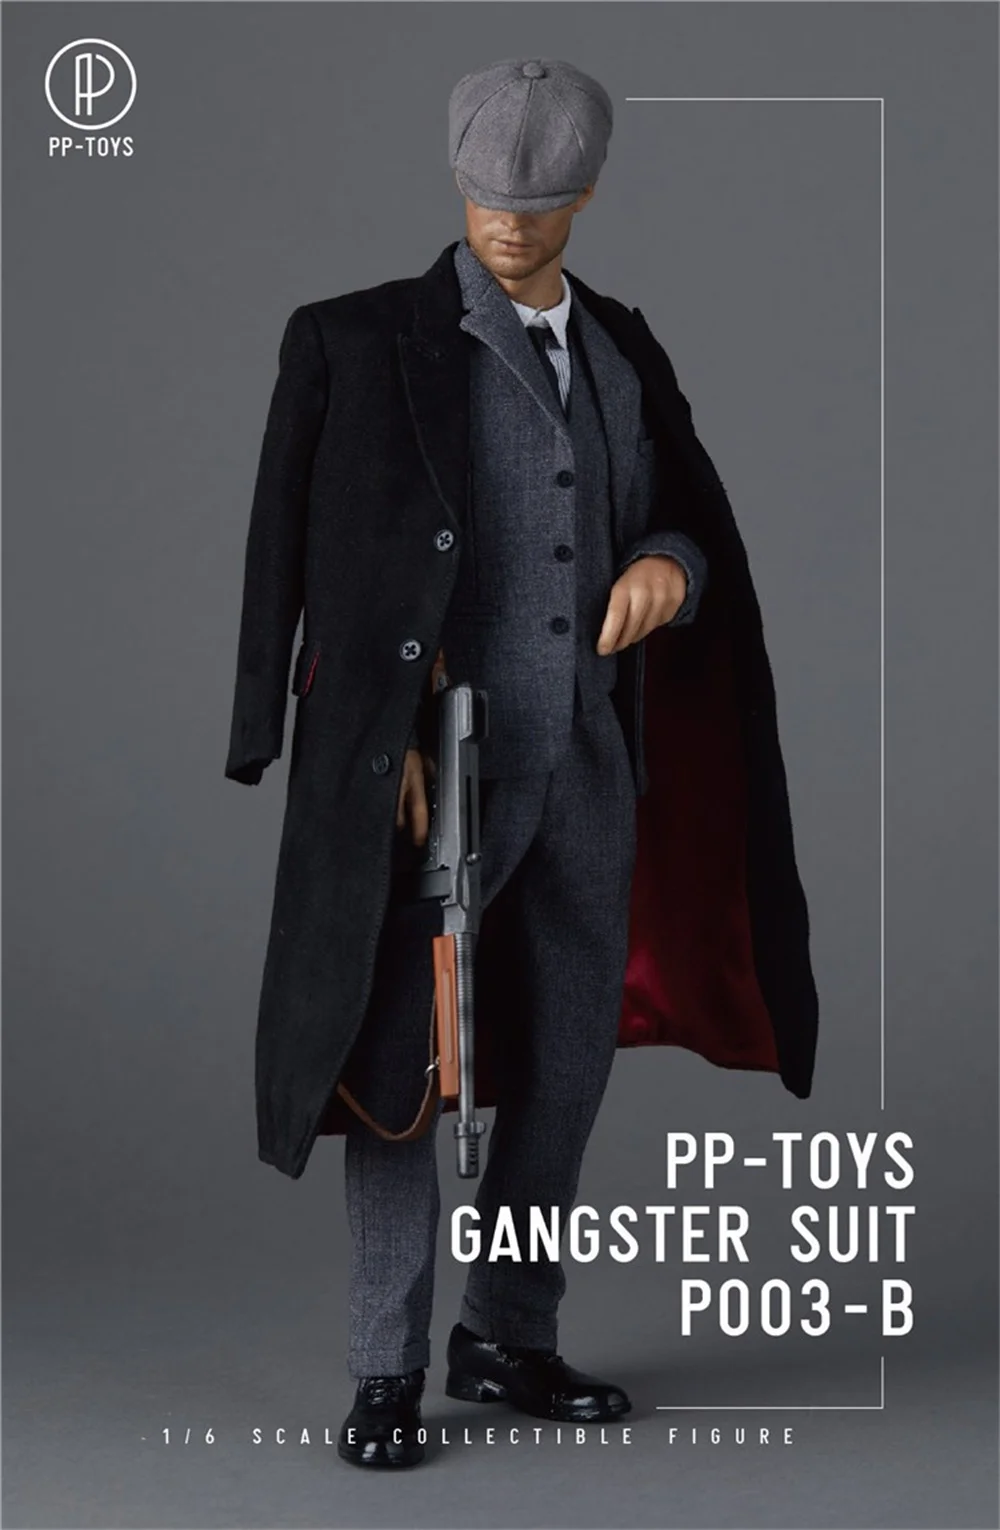 

PP-TOYS P003 1/6 British Gangster Gentleman Retro Suit Shirt Vest Coat Cap Shoes Set For 12'' Male Soldier Action Figure